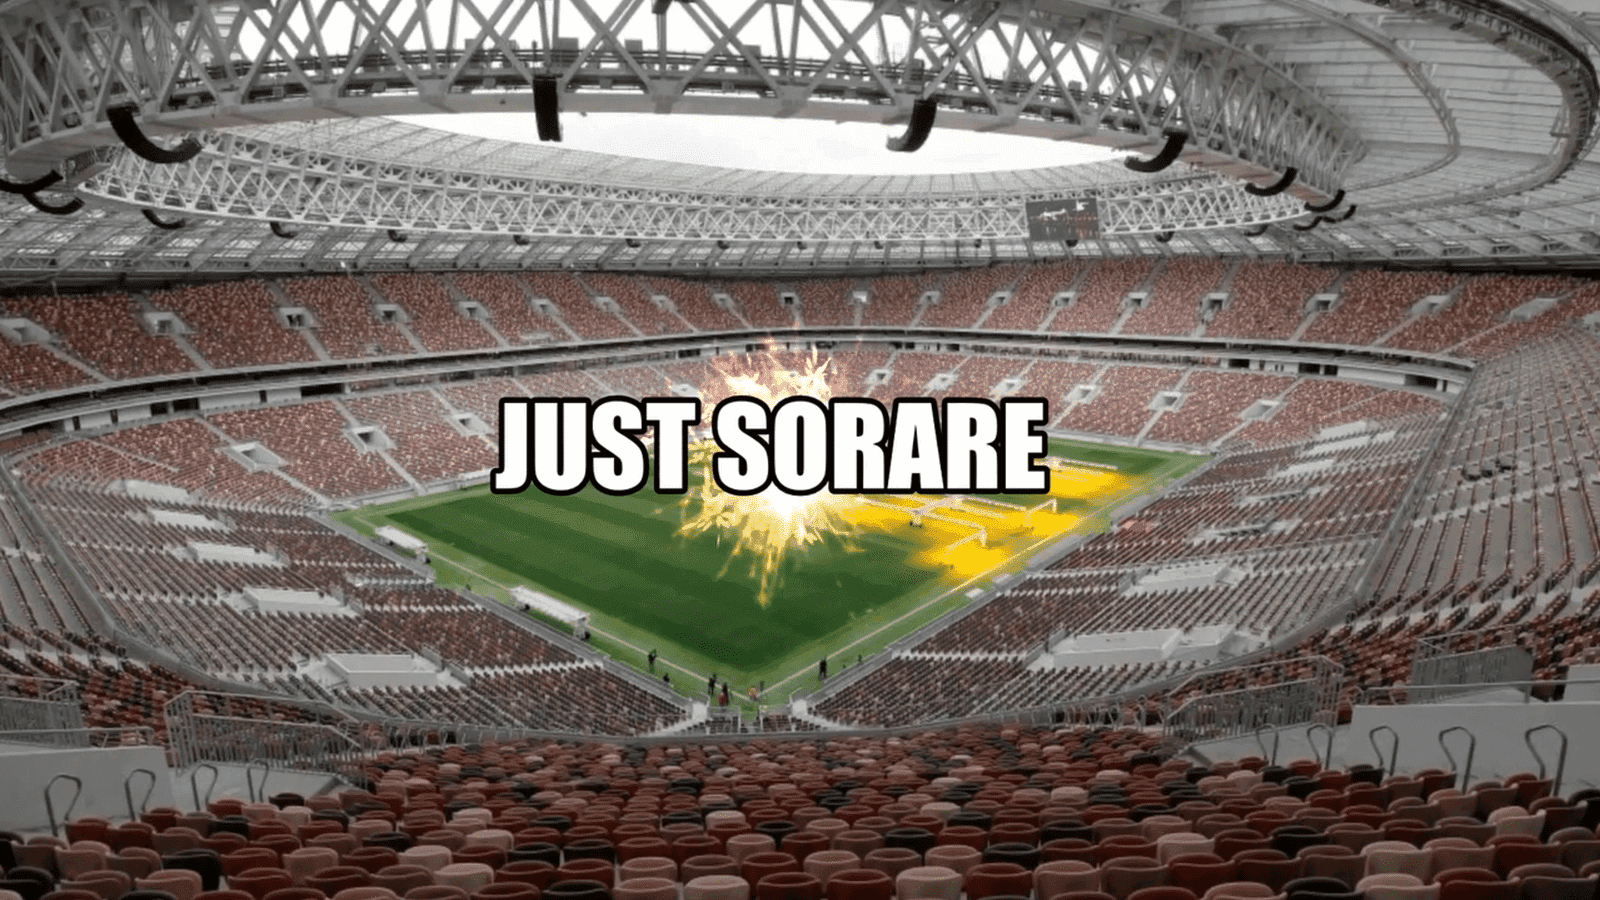 Sorare, hem gerçekçi hem de eğlenceli olma yeteneği nedeniyle popülaritesi artan, kripto tabanlı bir fantezi futbol oyunudur.